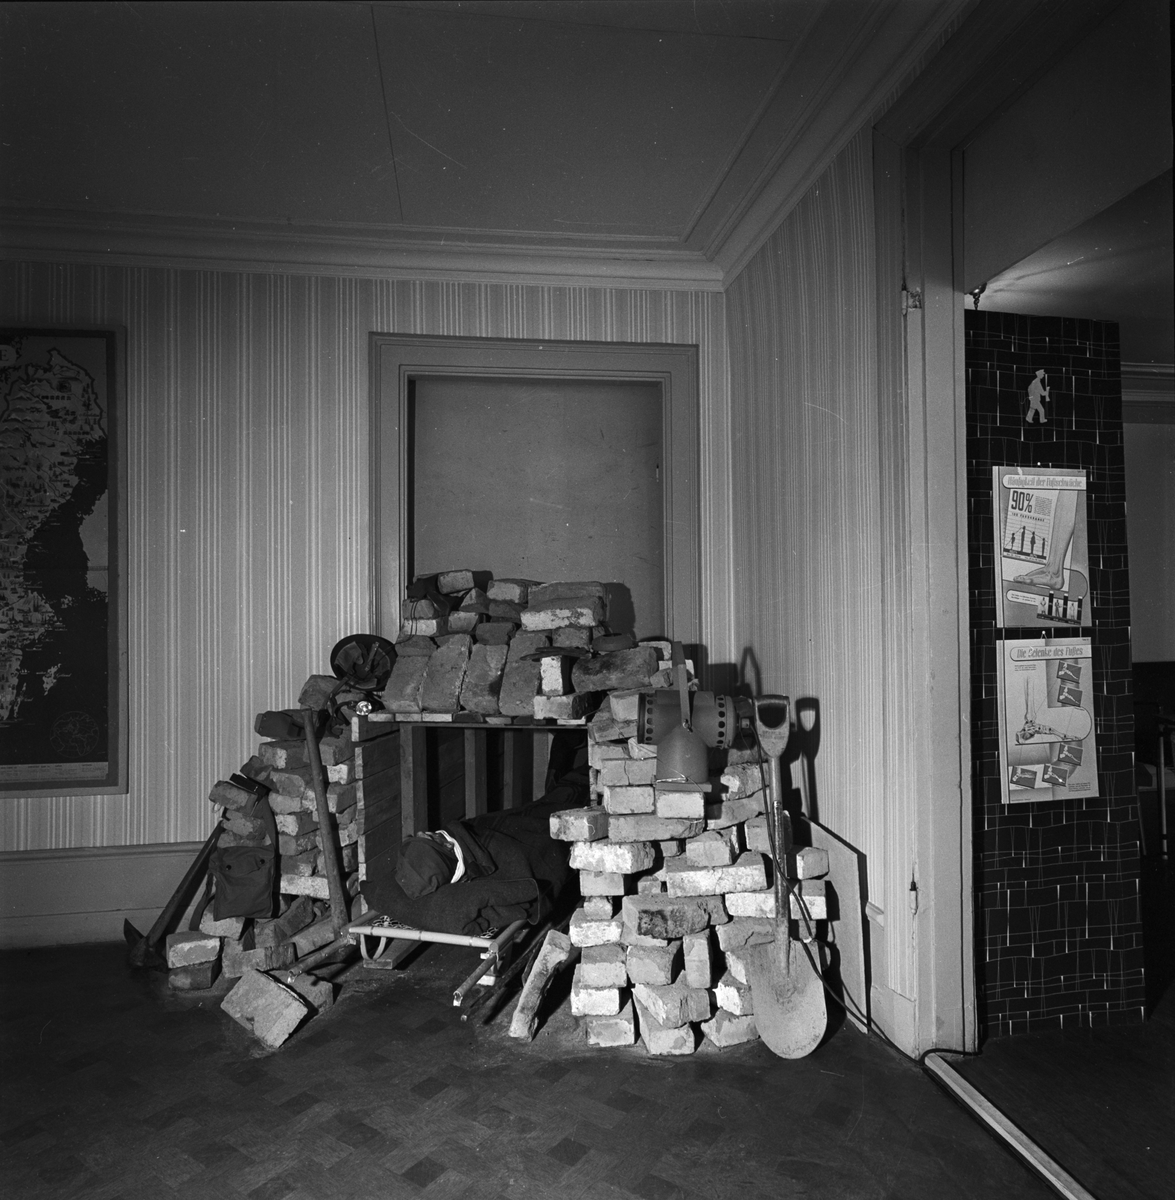 Utställning på Fyrismässan, Uppsala 1956